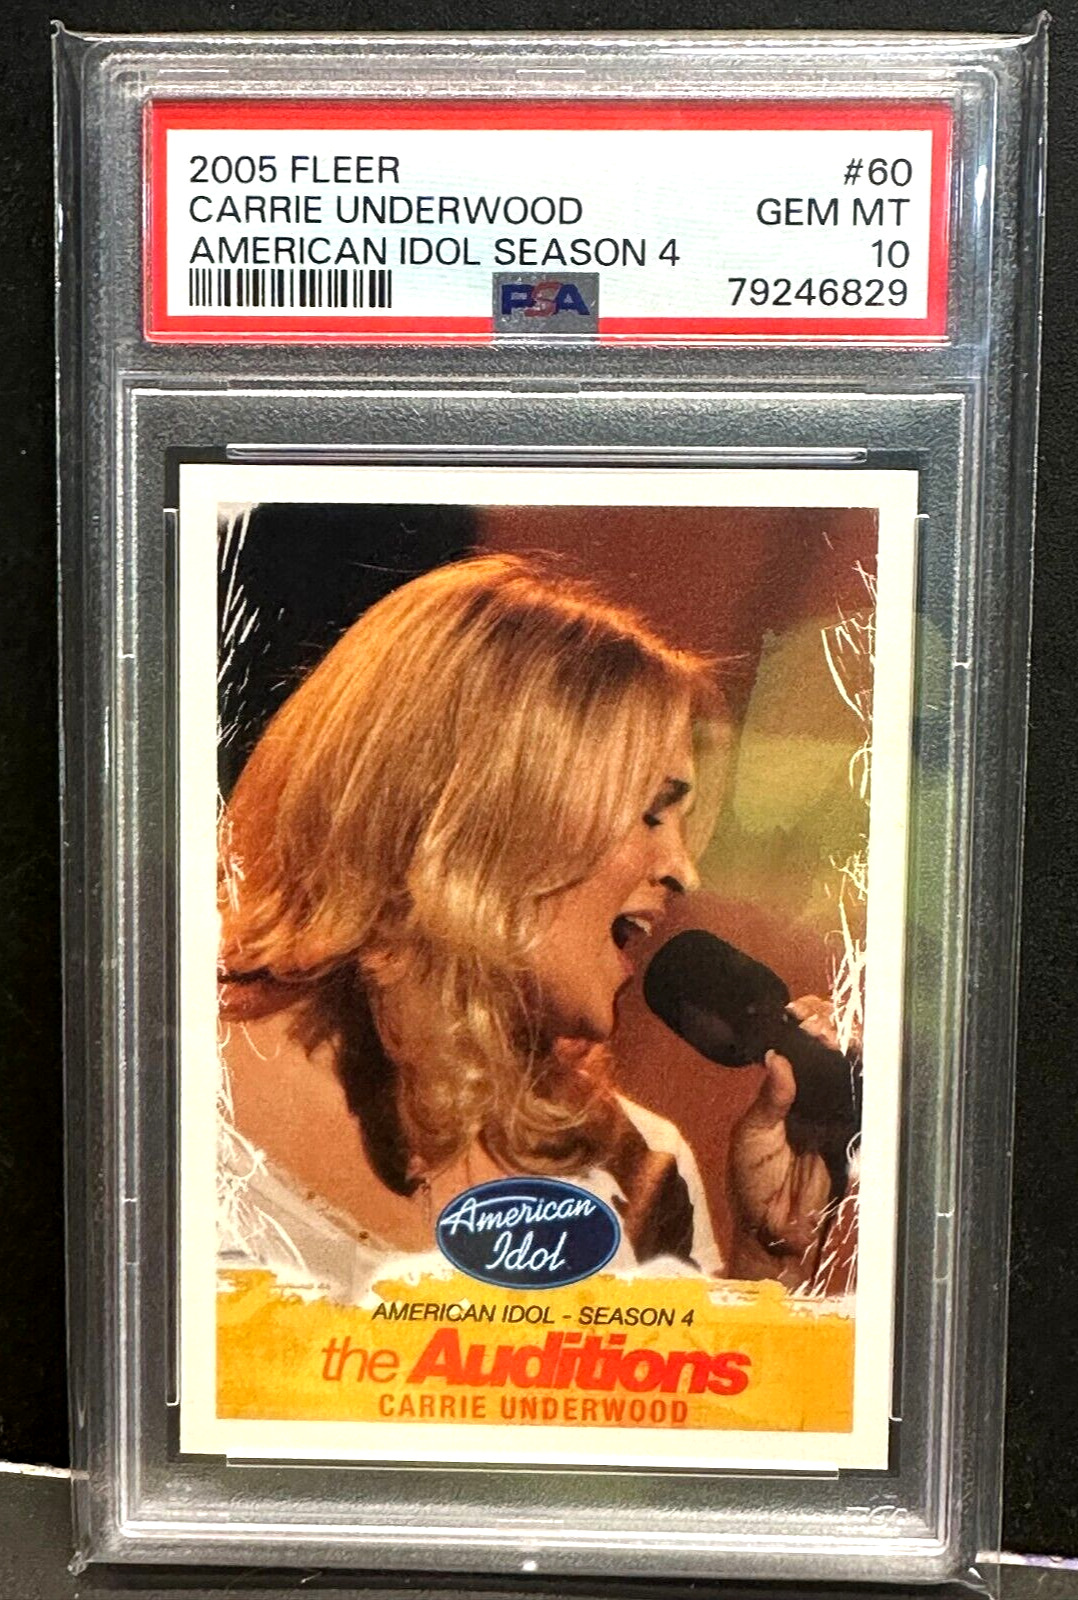 Carrie Underwood 2005 Fleer American Idol Season 4 RC Rookie #60 PSA 10 GEM MT